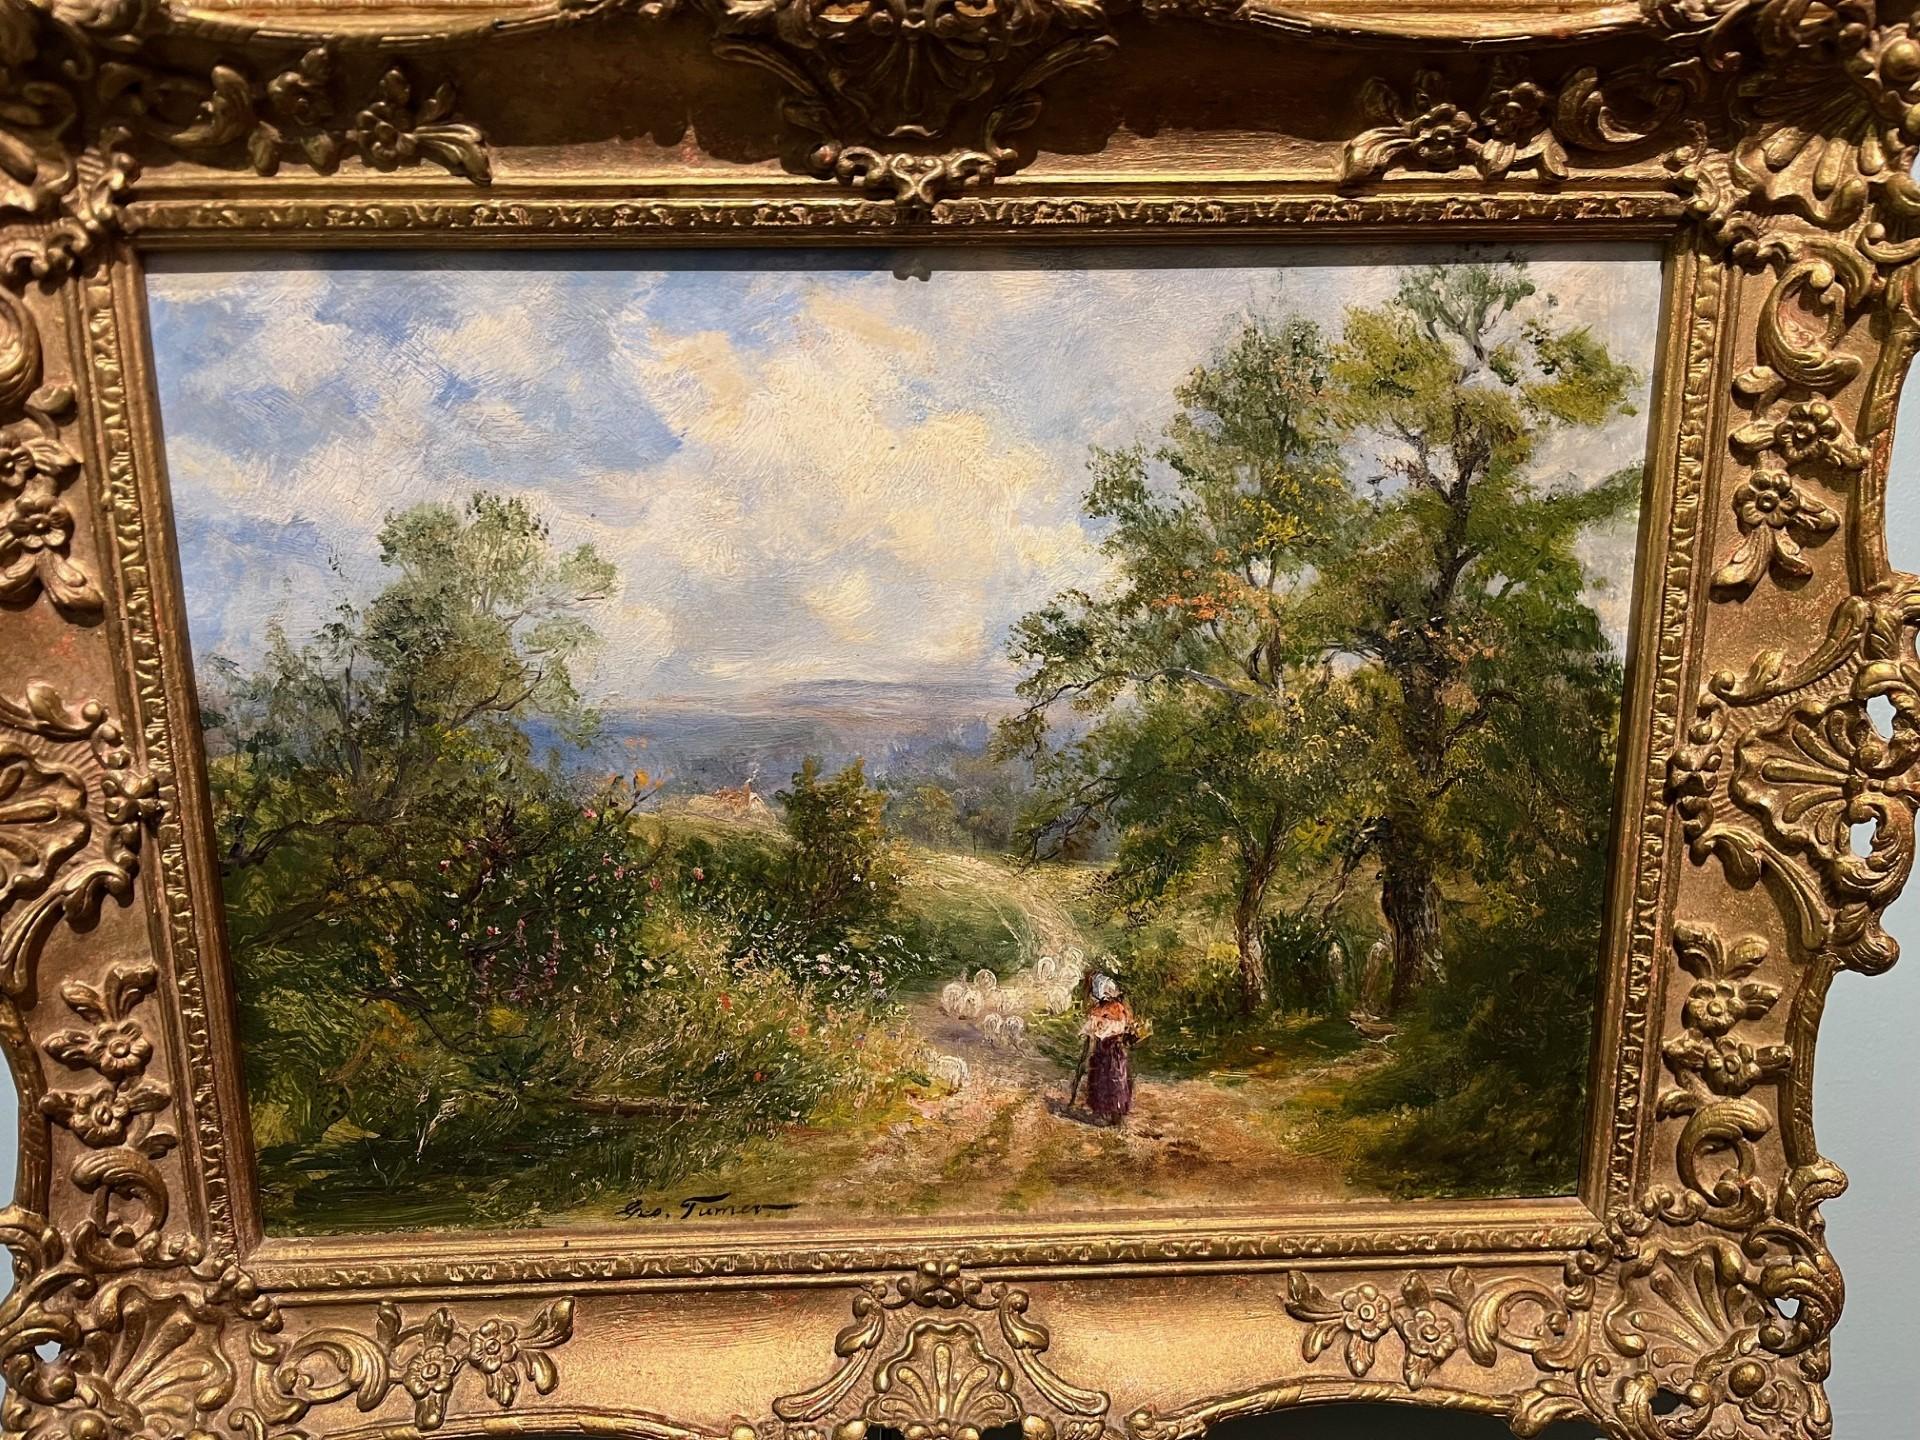 Kleines bukolisches Öl auf Tafel des viktorianischen Malers George Turner.
Ein seltenes Vergnügen, eine solche kleine Schönheit von diesem begehrten Künstler zu besitzen.   Englischer Landschaftsmaler und Landwirt, der oft als  